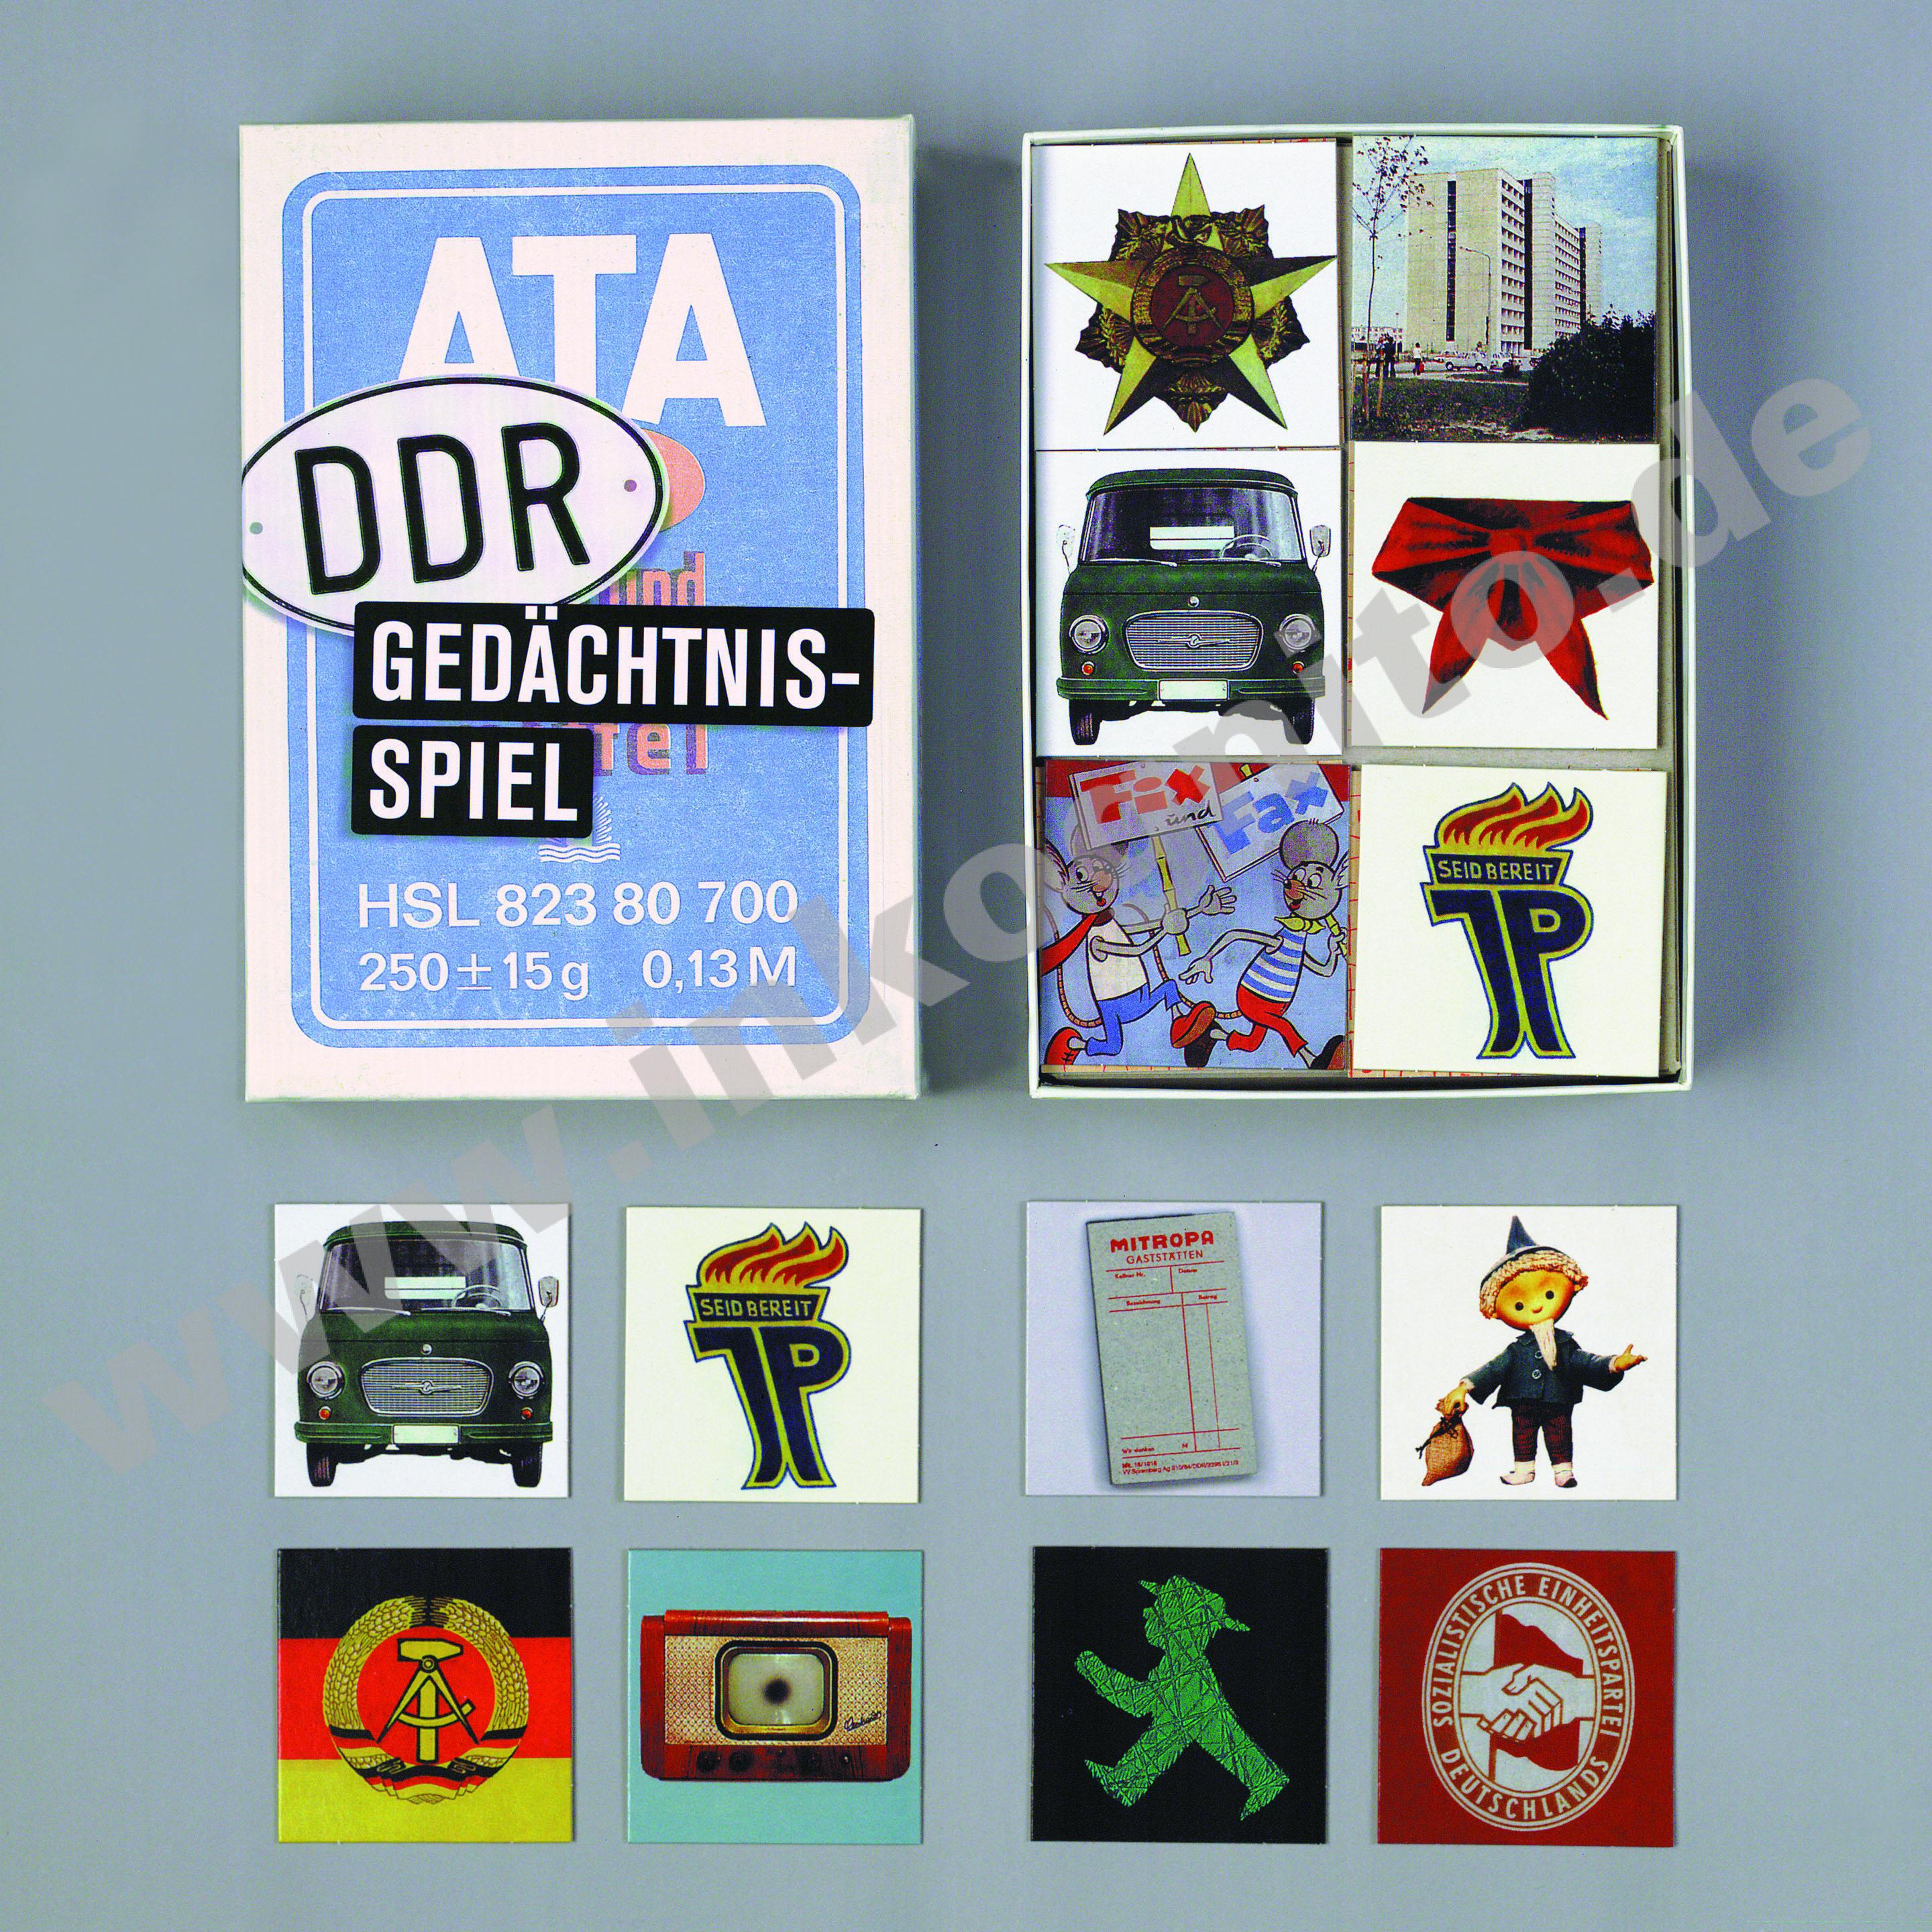 Memo ATA - Das DDR Gedächtnisspiel